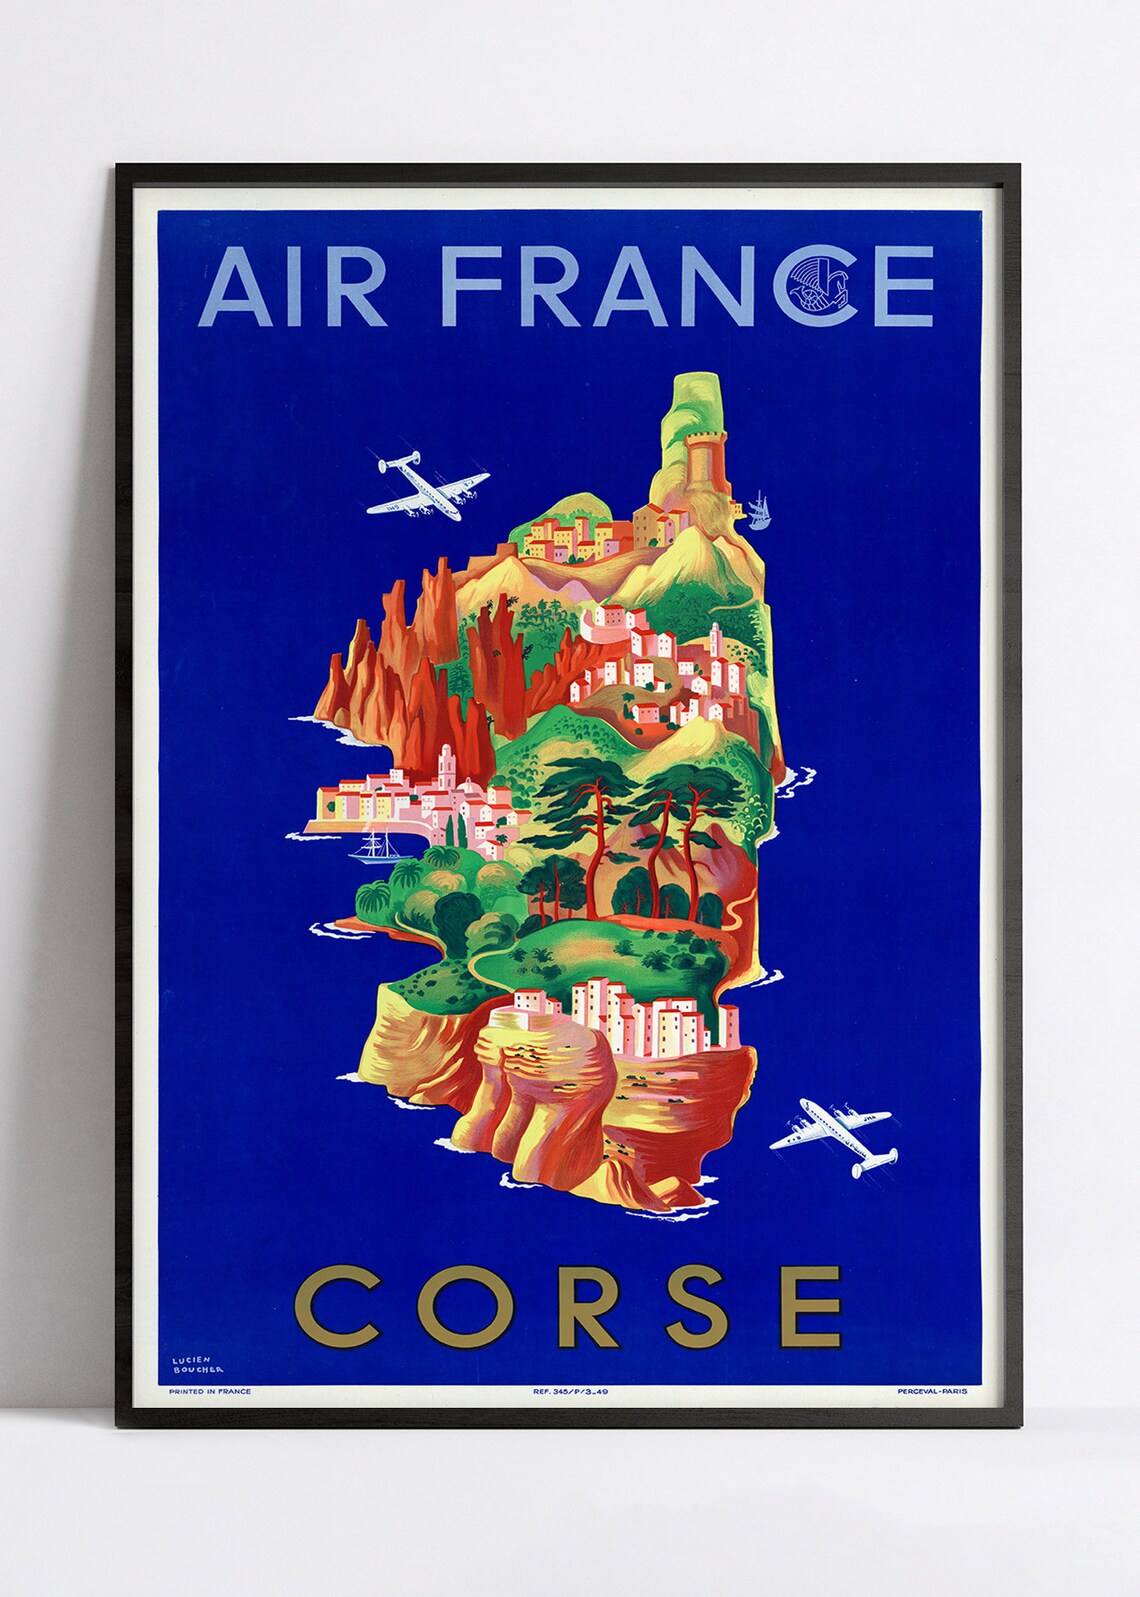 Affiche Air France "Corse" - Lucien Boucher - Haute Définition - papier mat 230gr/m2